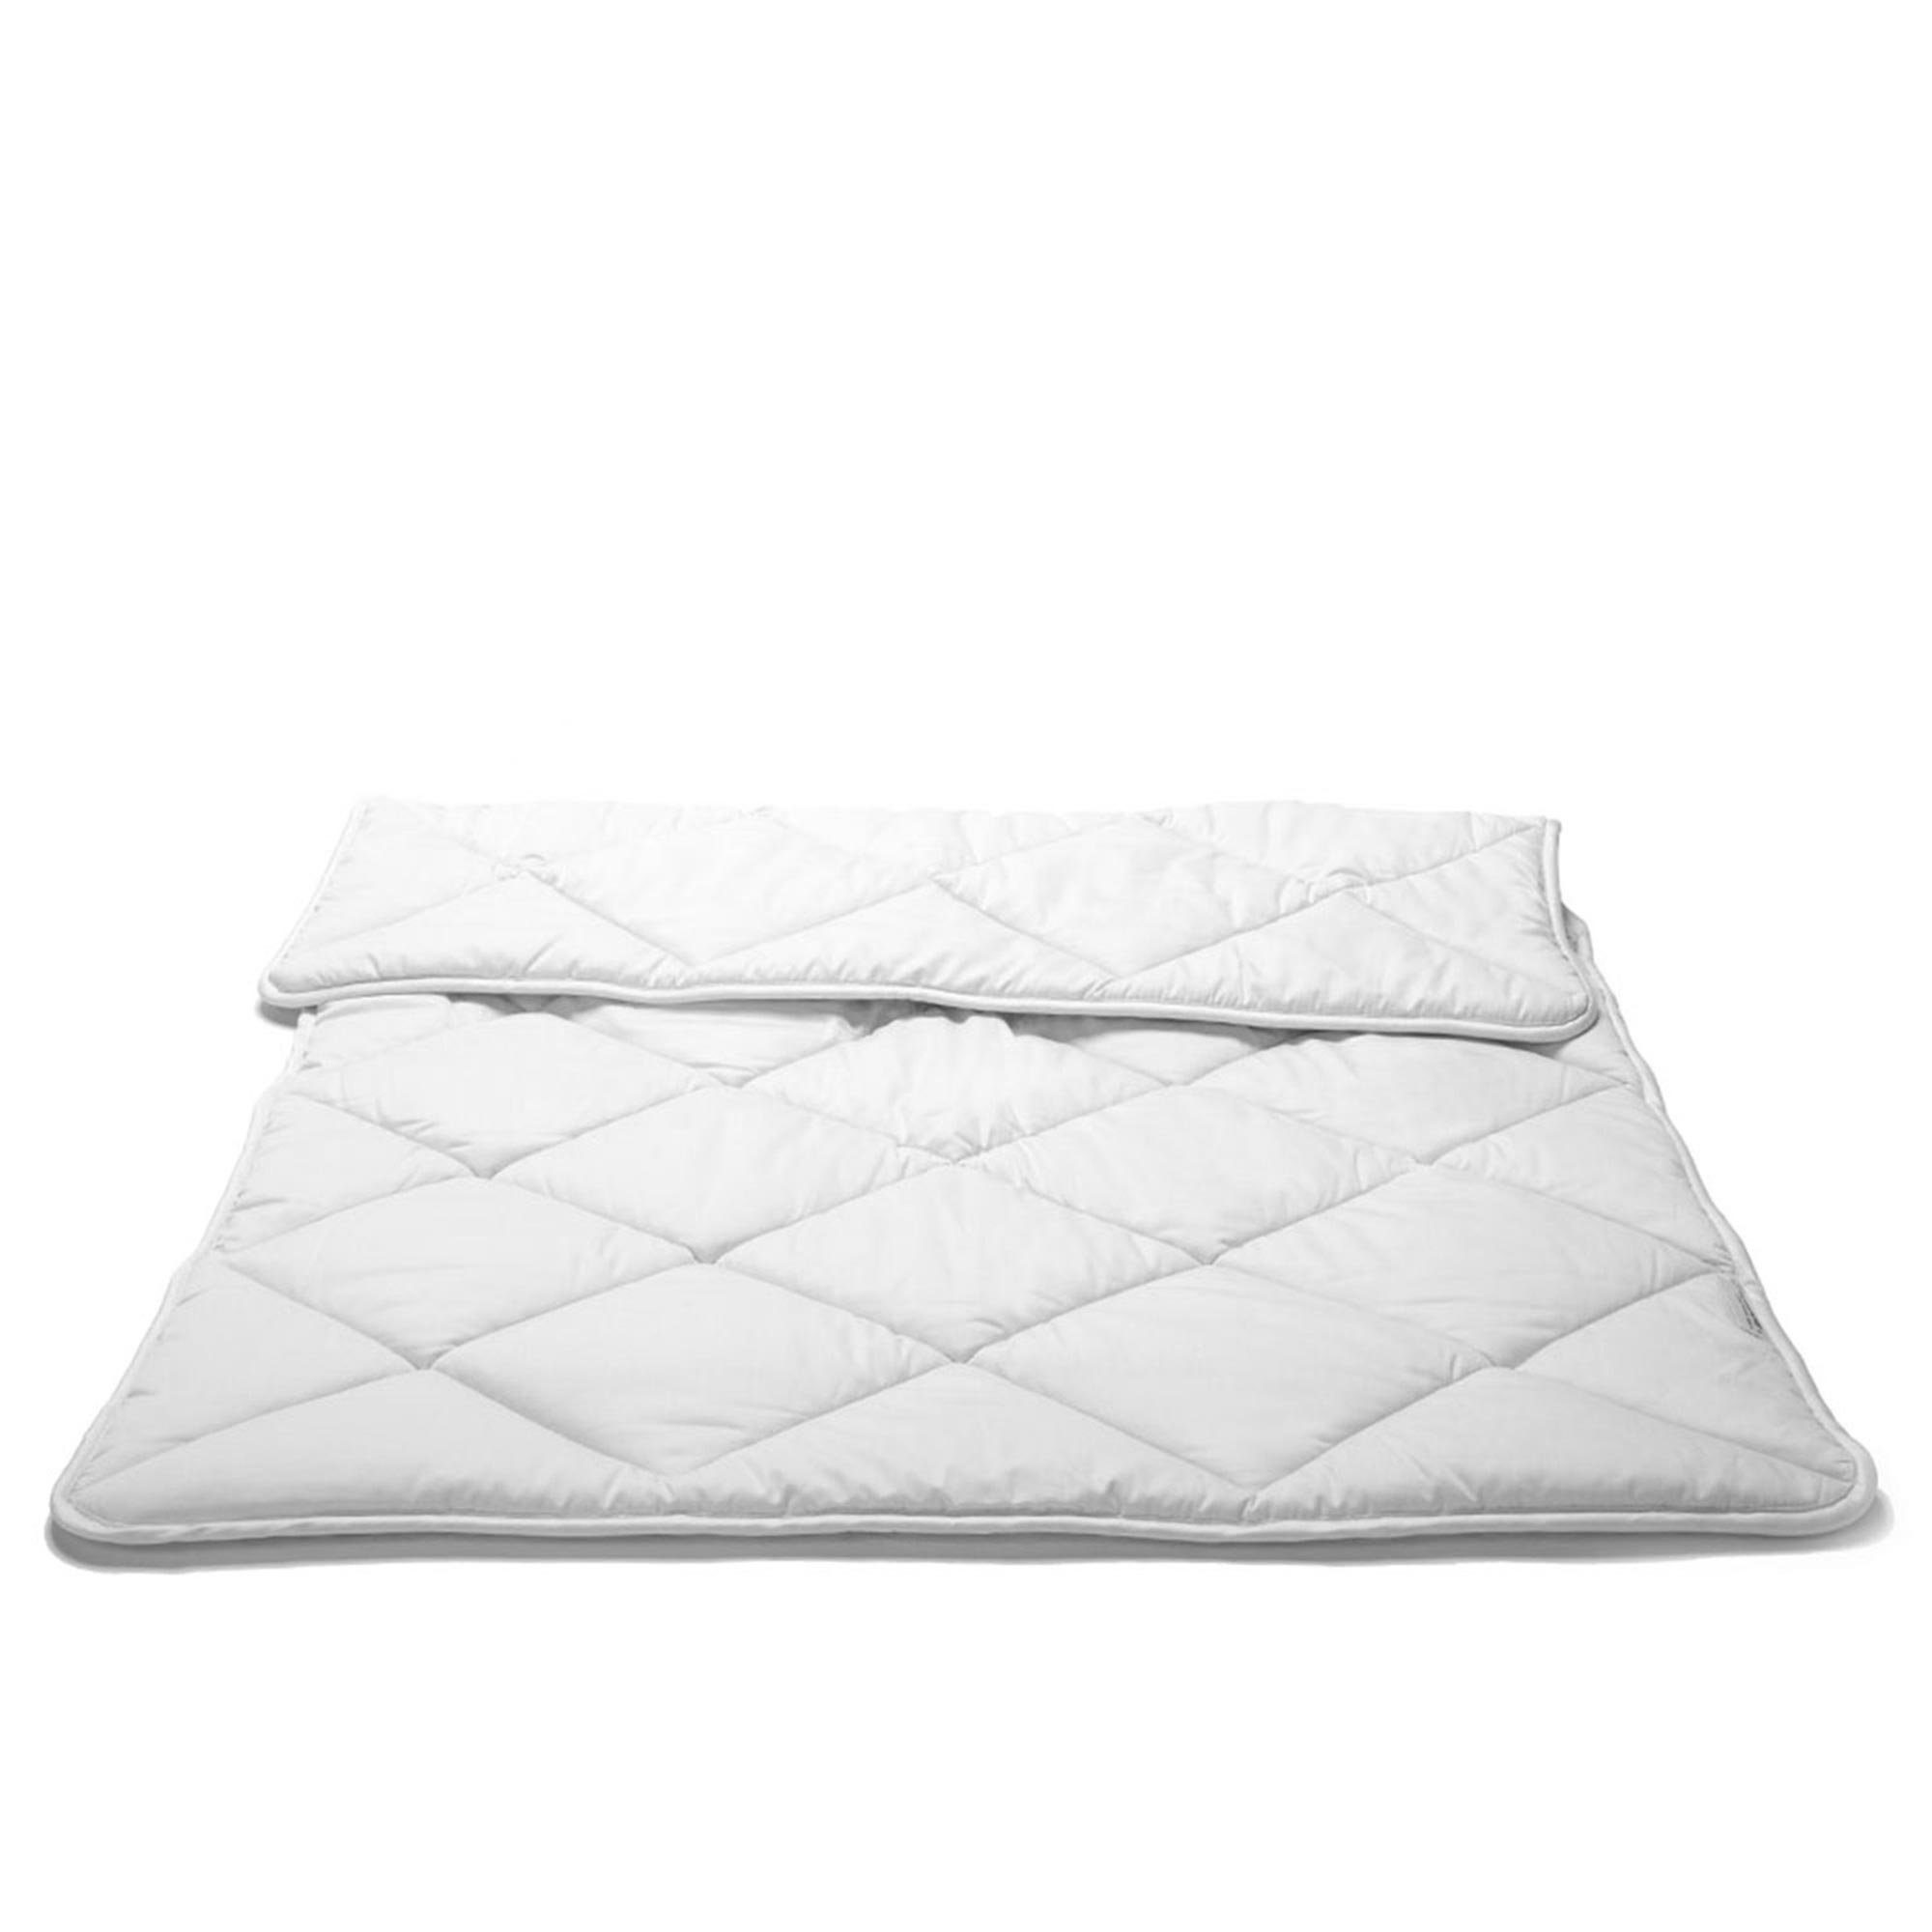 Tagesdecke Sommer-Bettdecke Baumwolle, NATUREHOME 100% 155x220cm, aus